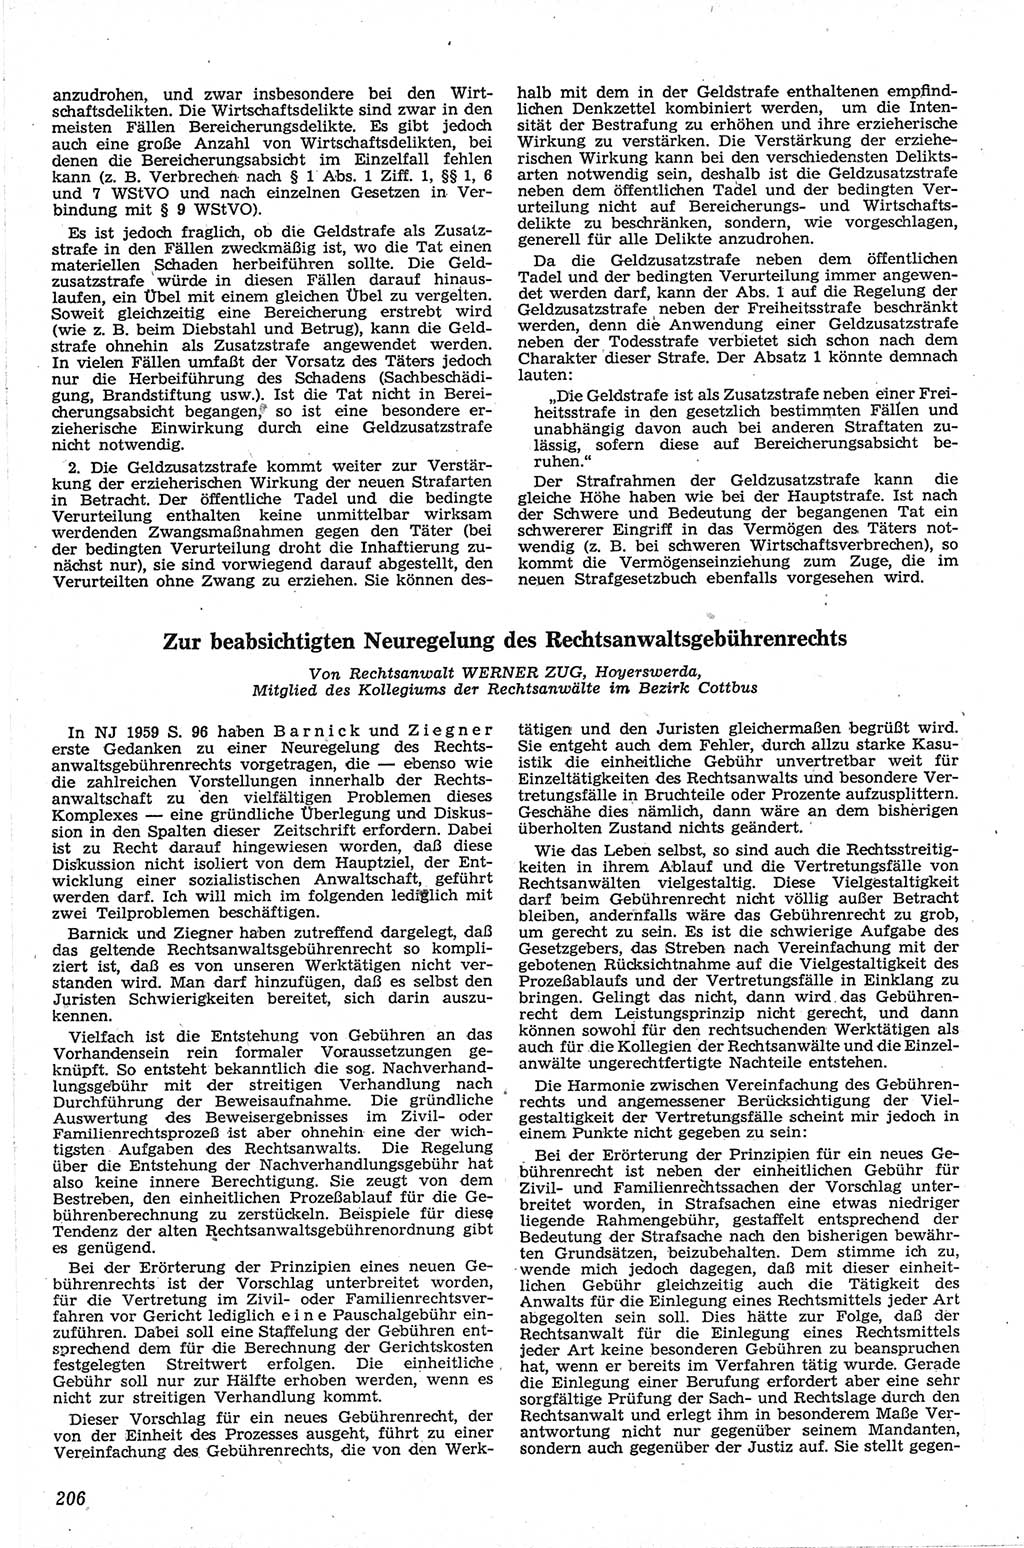 Neue Justiz (NJ), Zeitschrift für Recht und Rechtswissenschaft [Deutsche Demokratische Republik (DDR)], 13. Jahrgang 1959, Seite 206 (NJ DDR 1959, S. 206)